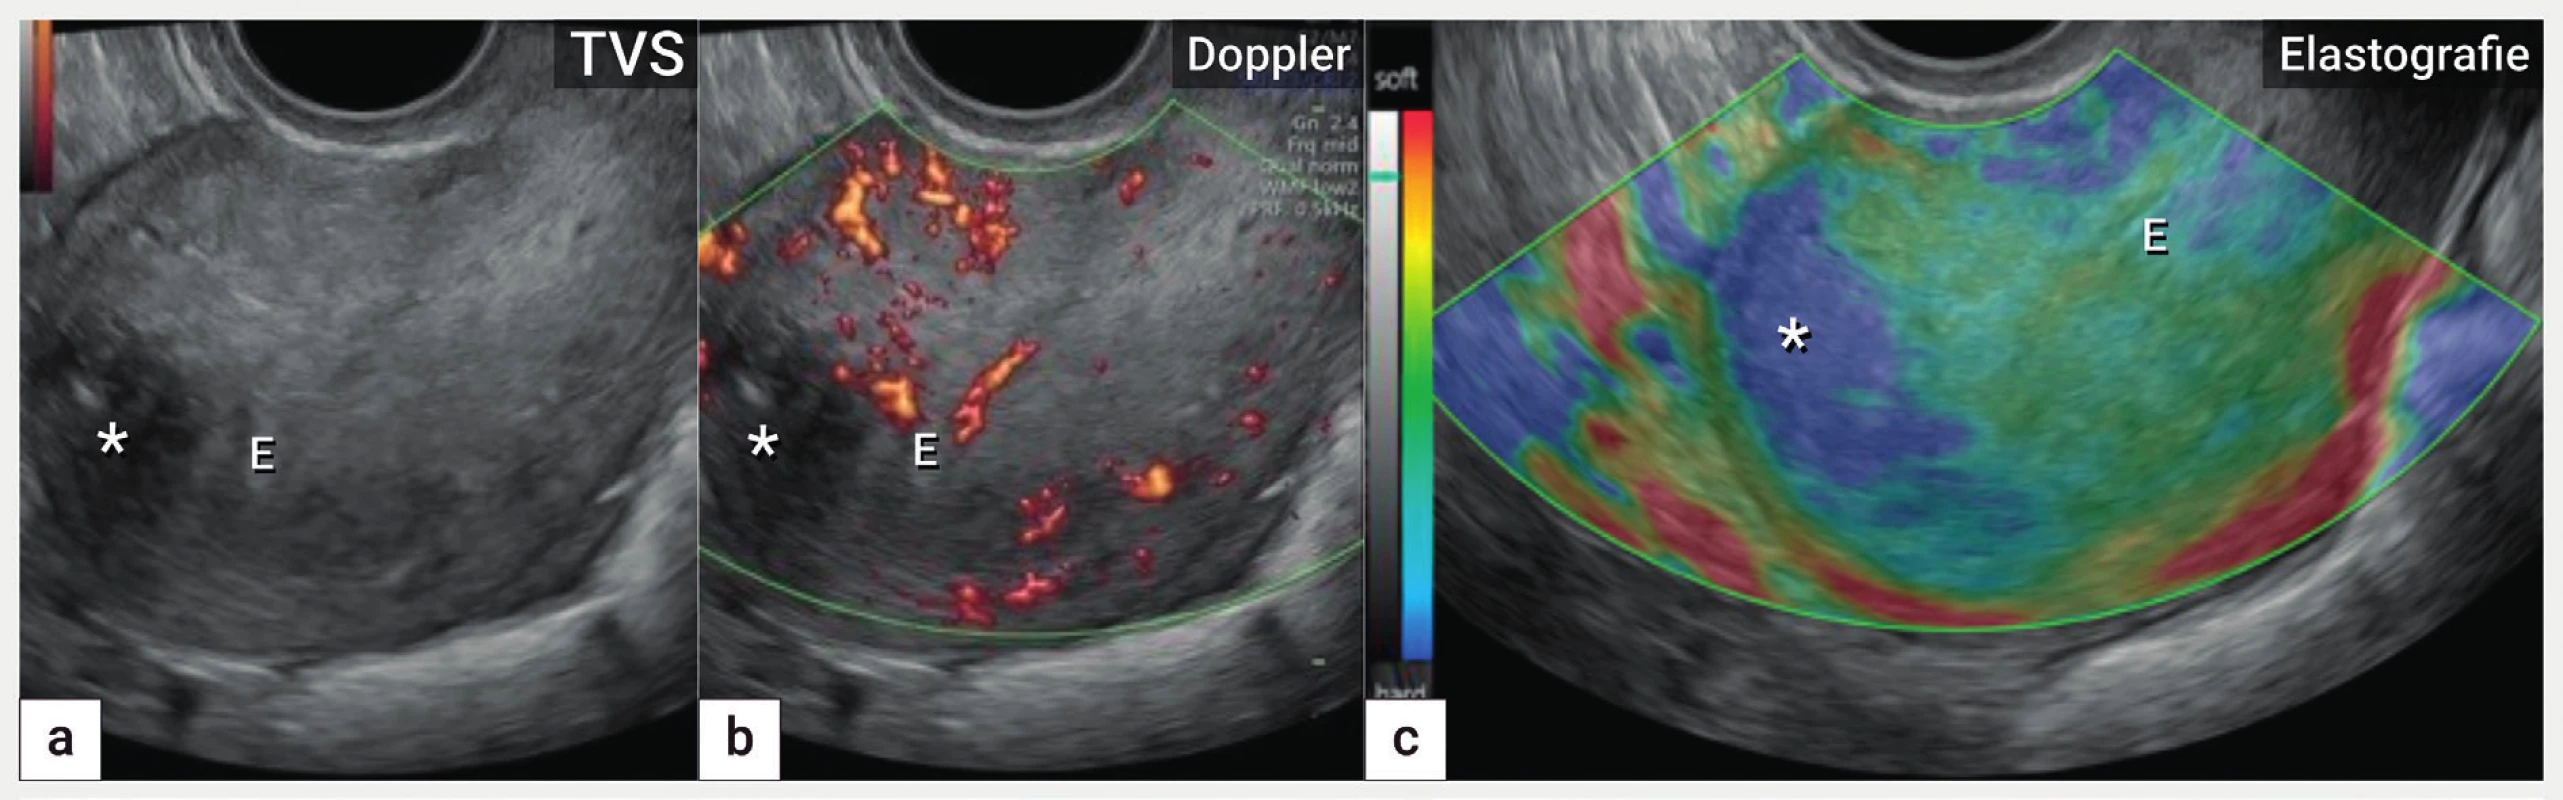 Elastografie<br>
Ultrazvukové zobrazení dělohy (B-mode, škála šedi) s koncentricky zesílenou přední a zvláště zadní stěnou na podkladě adenomyózy
(a), zobrazení barevným dopplerem s nezměněnou perfuzí v přední a zadní stěně děložní (b), elastografie s označením fibrotických změn
hvězdičkou (modrá oblast) uložených převážně ventrálně ve fundu (c).
E – endometrium